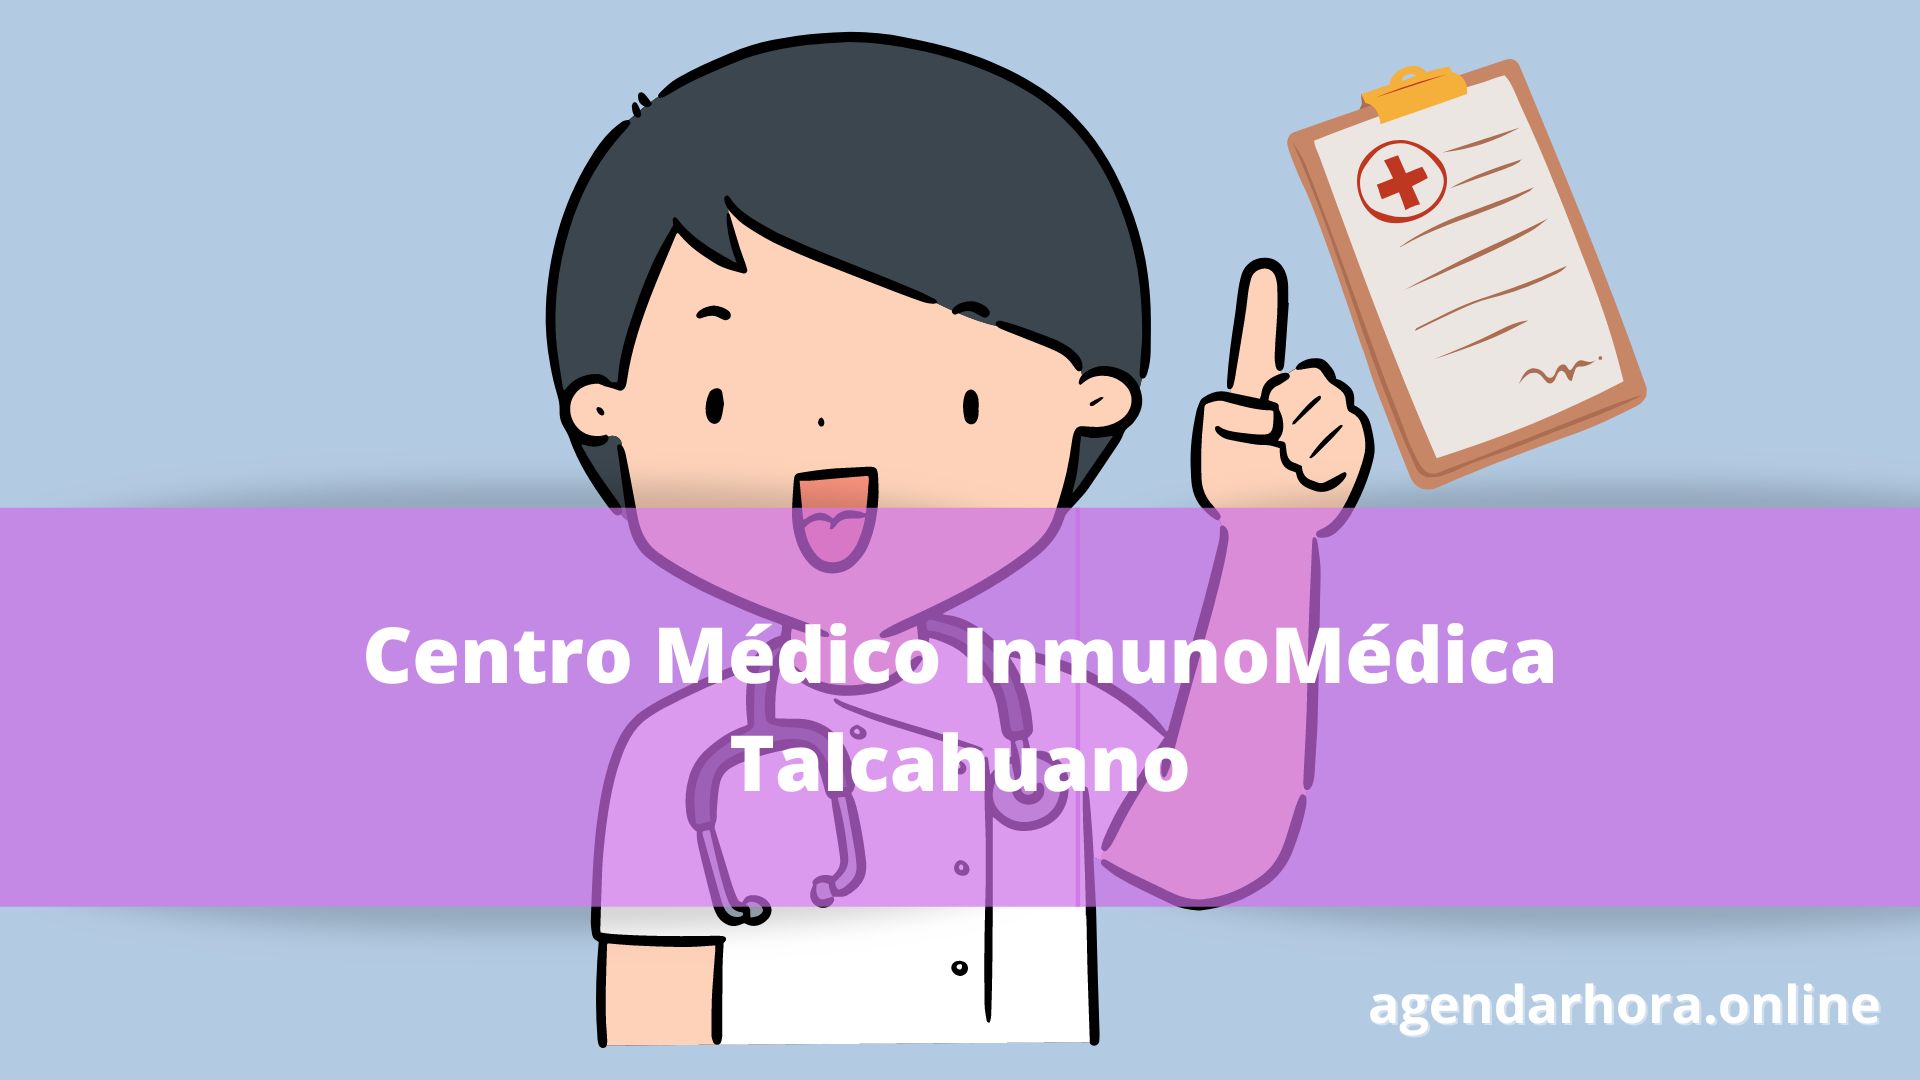 Centro Médico InmunoMédica Talcahuano